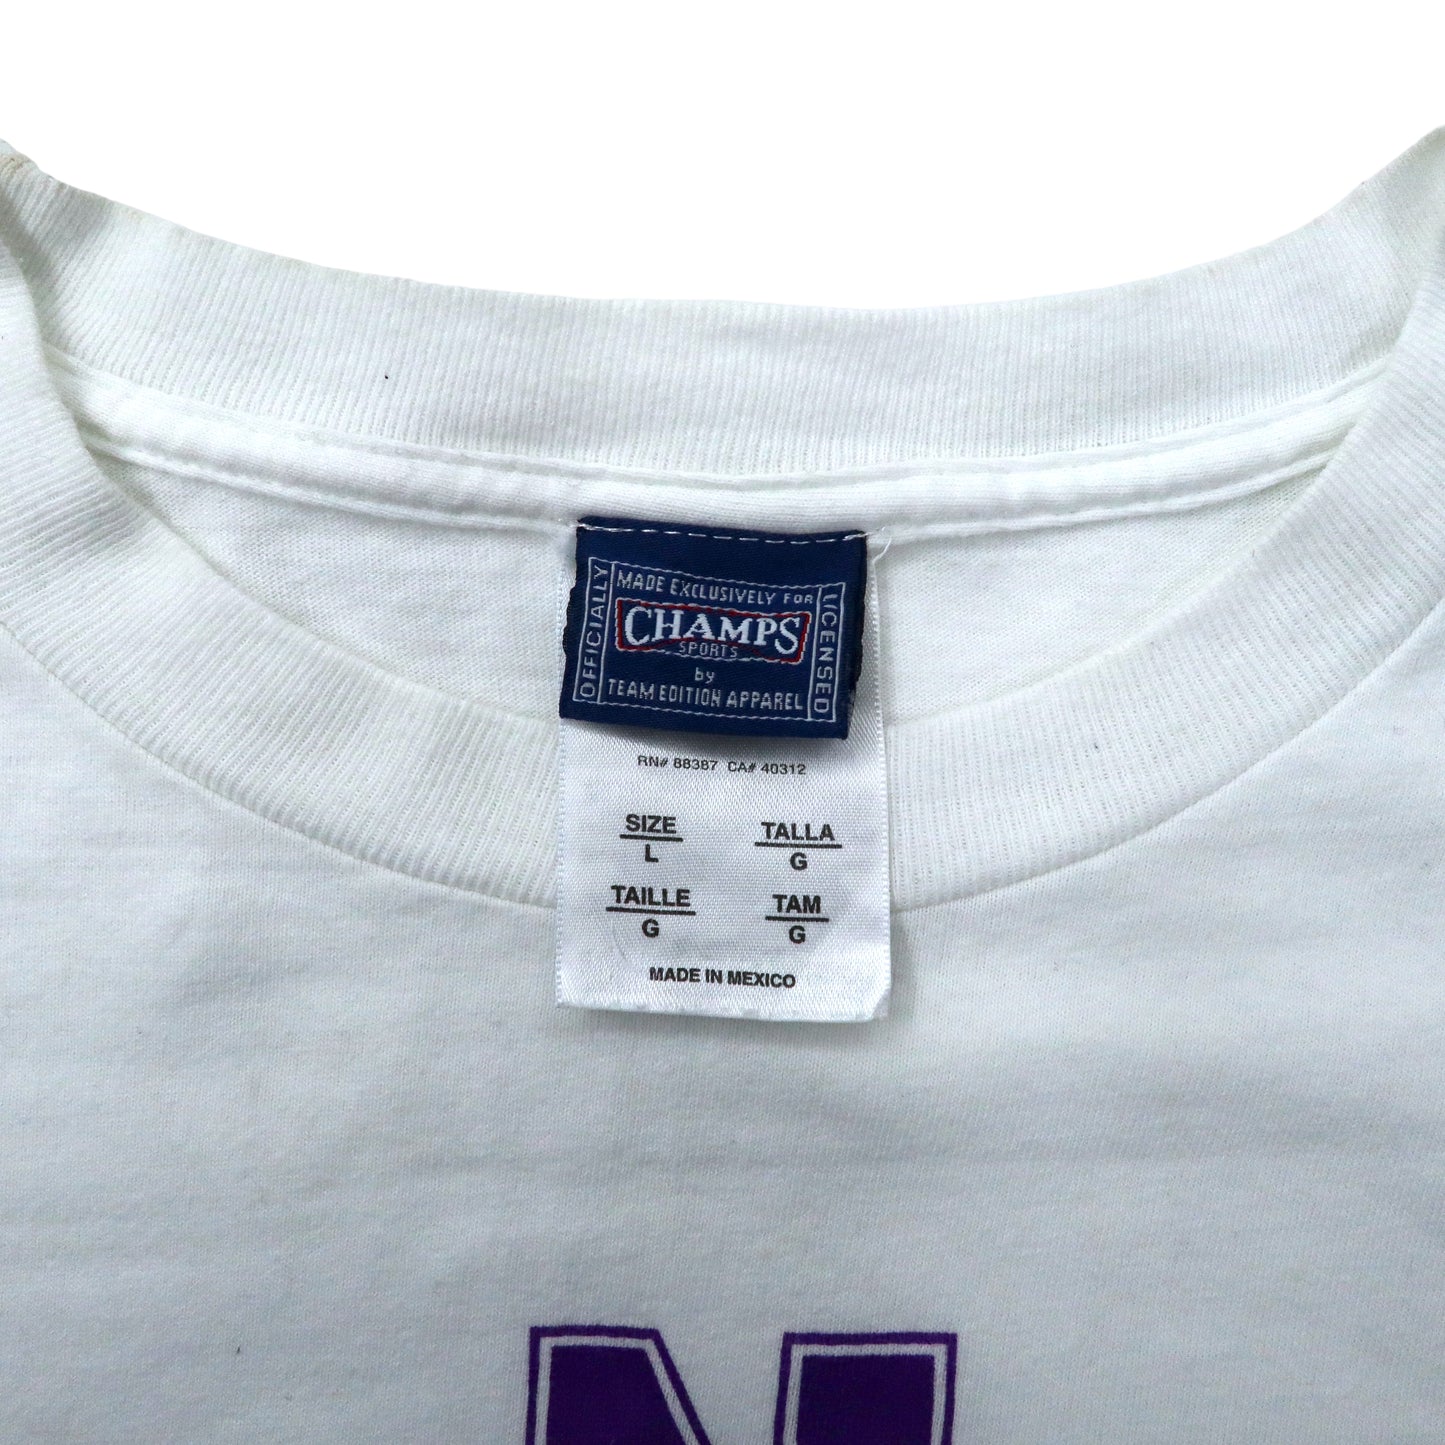 CHAMPS SPORTS 90年代 ビッグサイズ カレッジプリントTシャツ L ホワイト コットン NORTHWESTERN WILDCATS メキシコ製